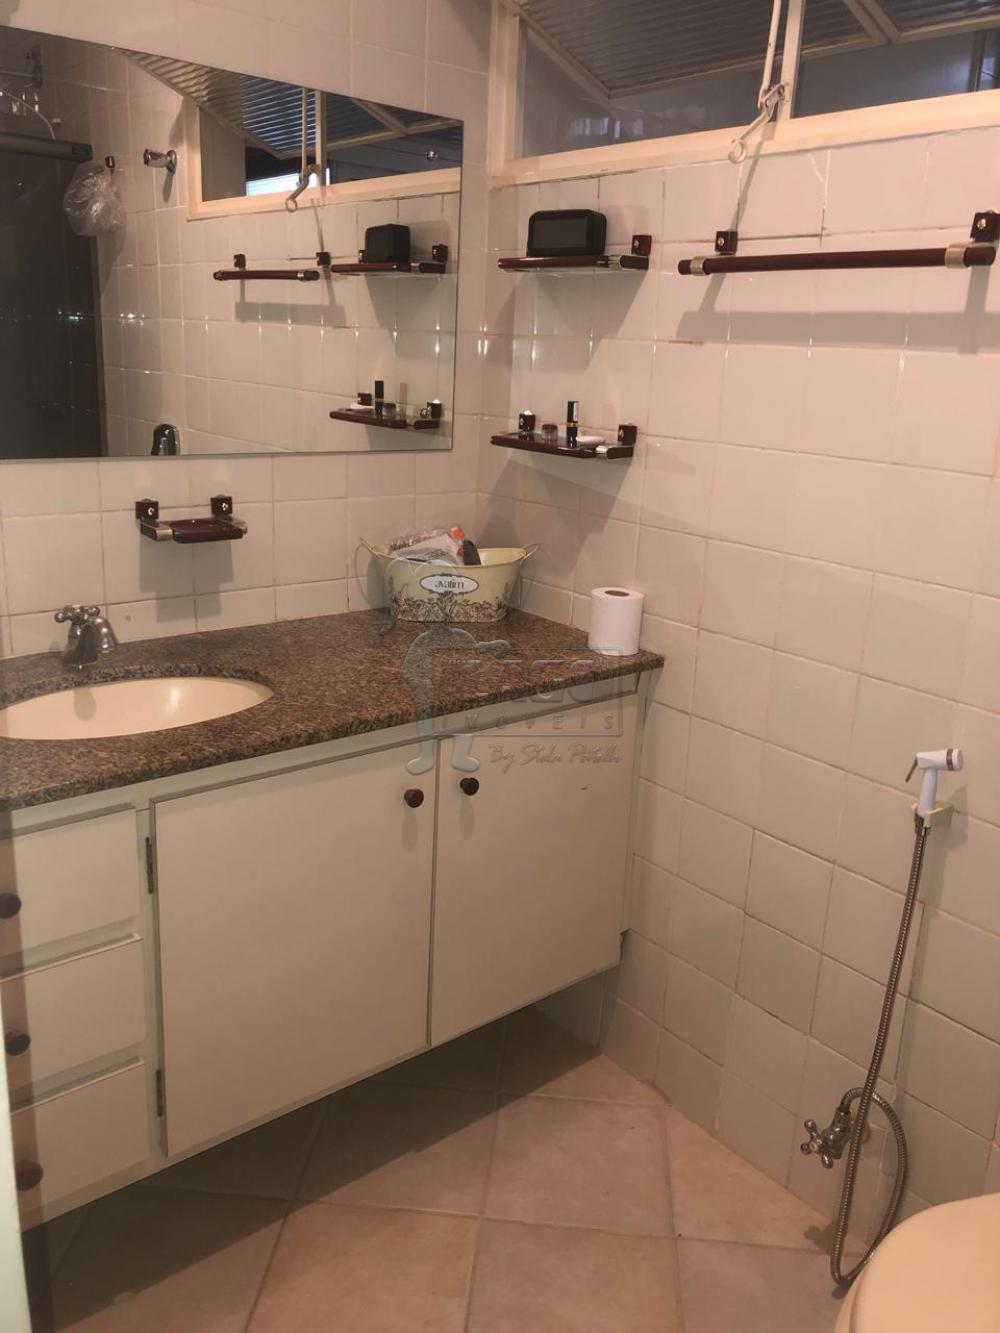 Comprar Apartamentos / Padrão em Ribeirão Preto R$ 320.000,00 - Foto 16